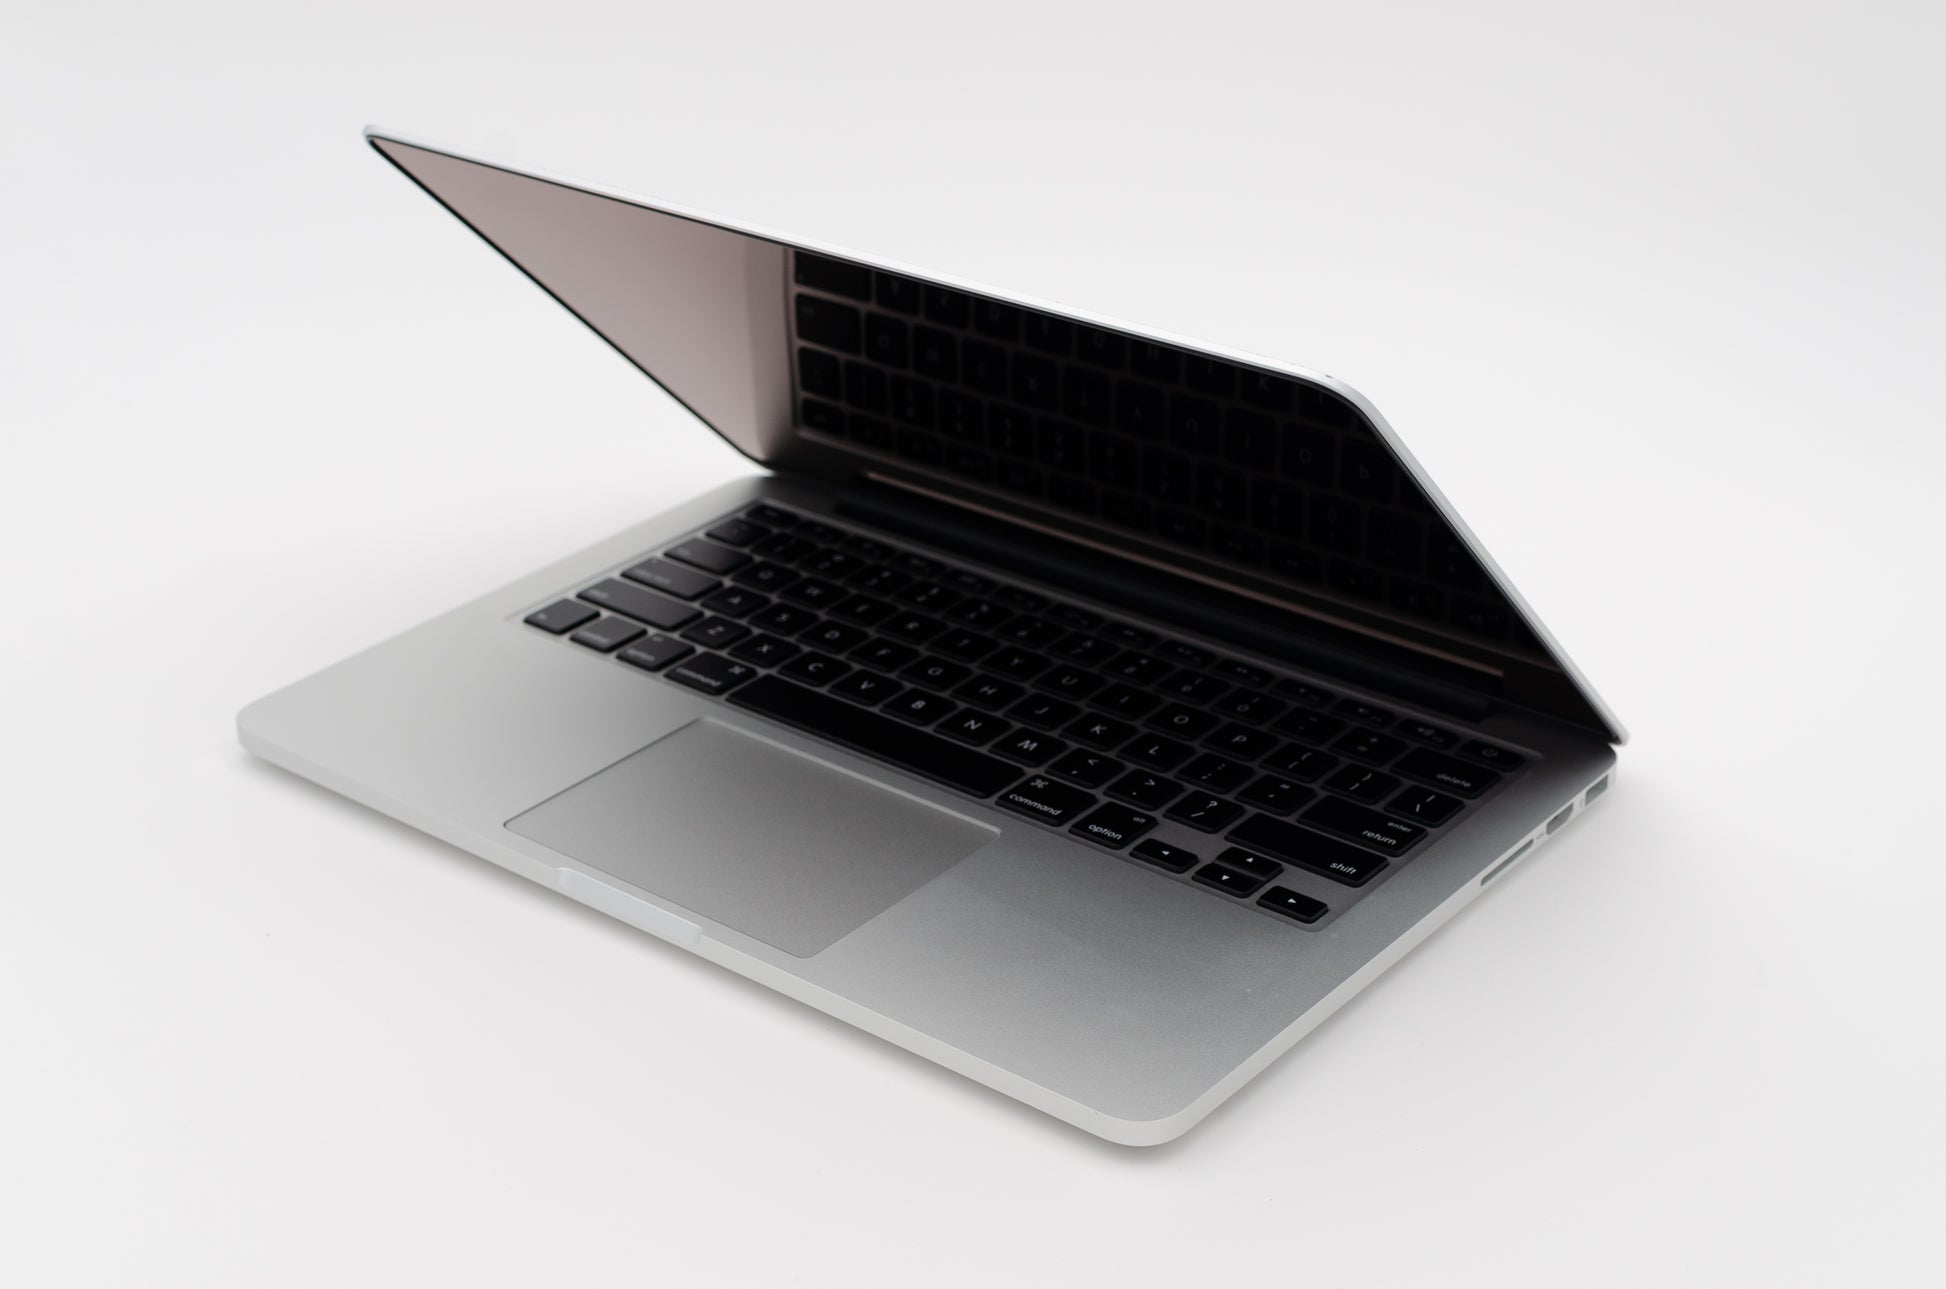 apple-mid-2014-13.3-inch-macbook-pro-retina-a1502-aluminum-dci5 - 2.6ghz processor, 8gb ram, 5100 - 1.5gb gpu-mgx82ll/a-5